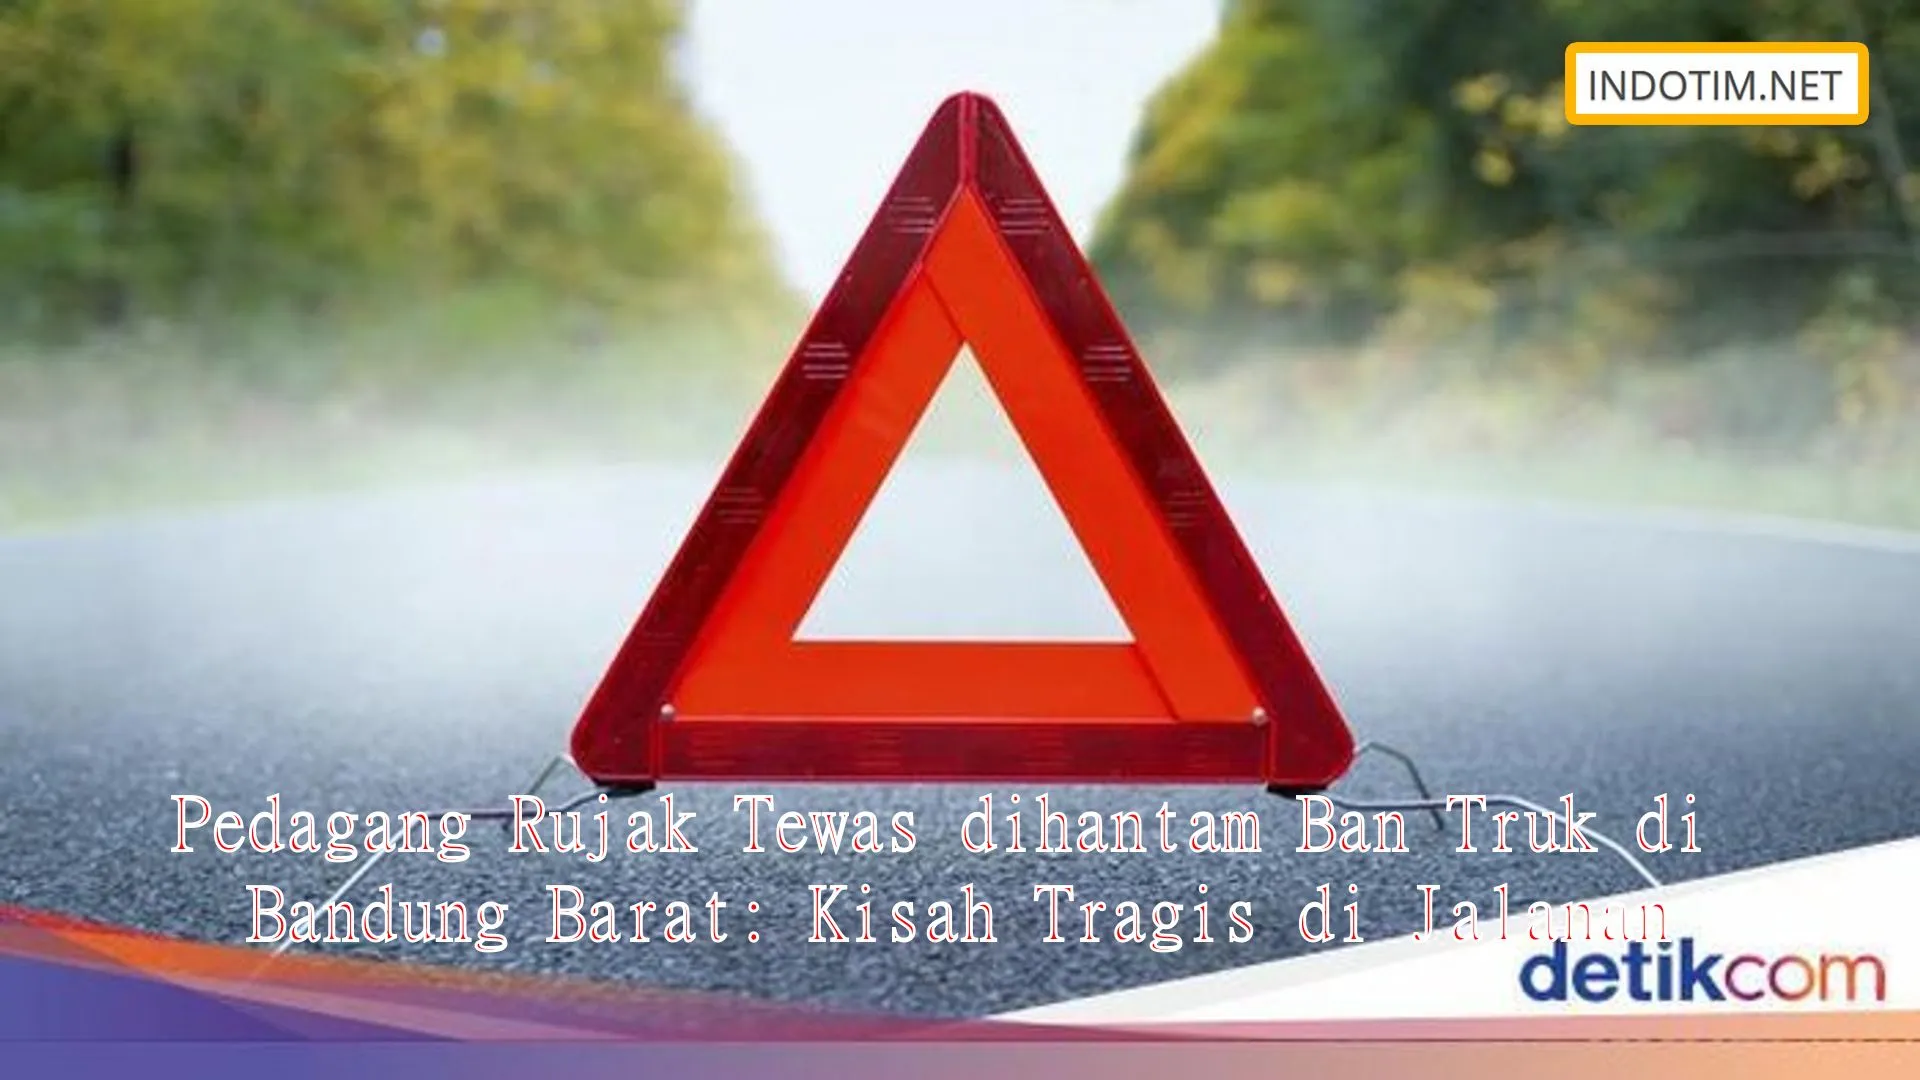 Pedagang Rujak Tewas dihantam Ban Truk di Bandung Barat: Kisah Tragis di Jalanan